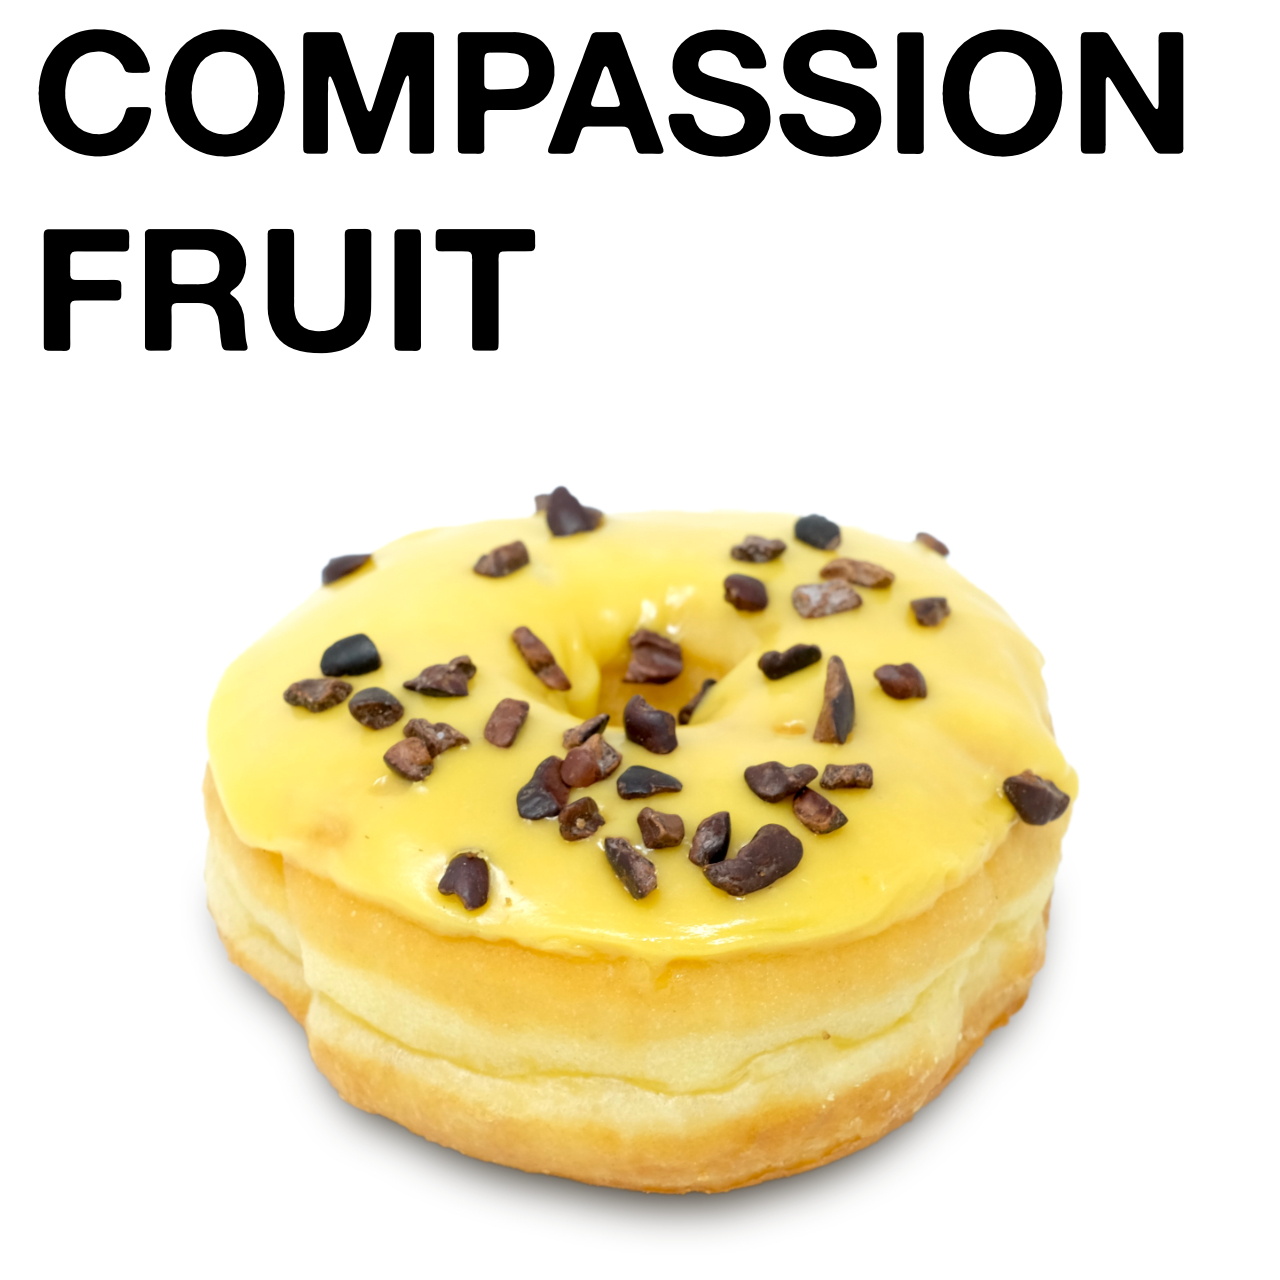 Compassion Fruit